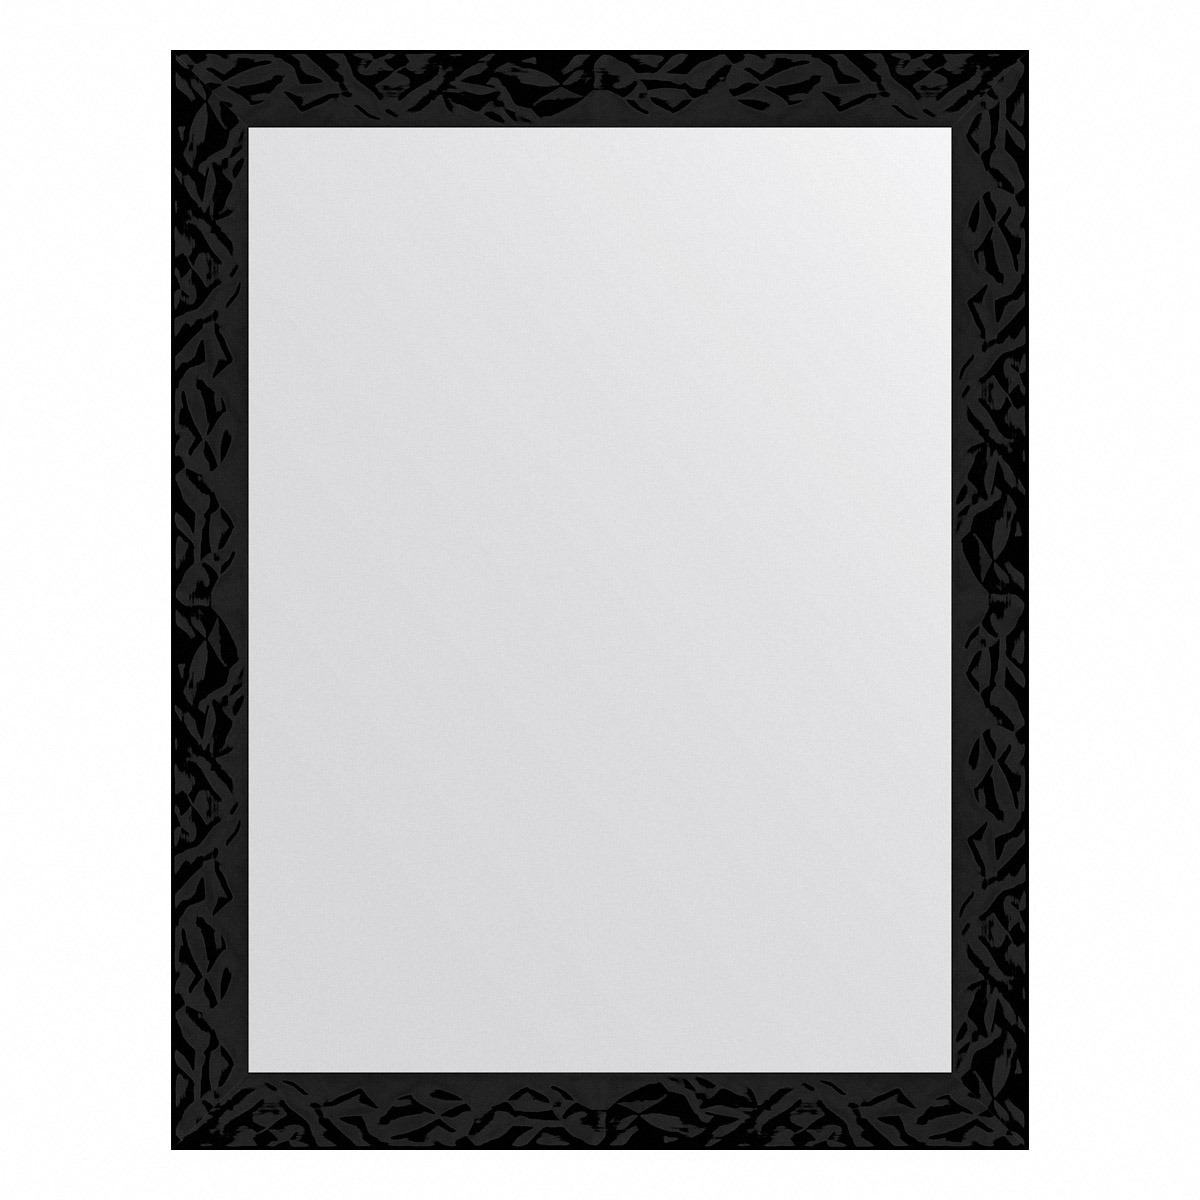 Зеркало в багетной раме Evoform черные дюны 32 мм 35х45 см зеркало в багетной раме evoform definite чёрные дюны 35х45 см bx 7491